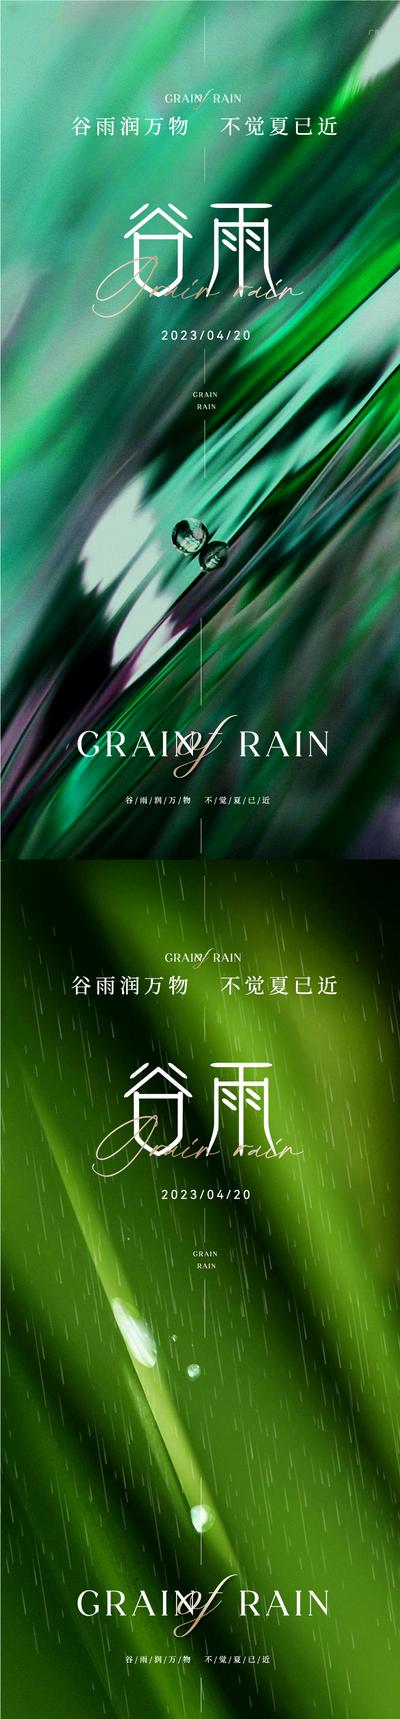 南门网 广告 海报 地产 谷雨 医美 节气 高端 质感 意境 下雨 雨水 肌理 高雅 清新 淡雅 唯美 轻奢 美业 绿色